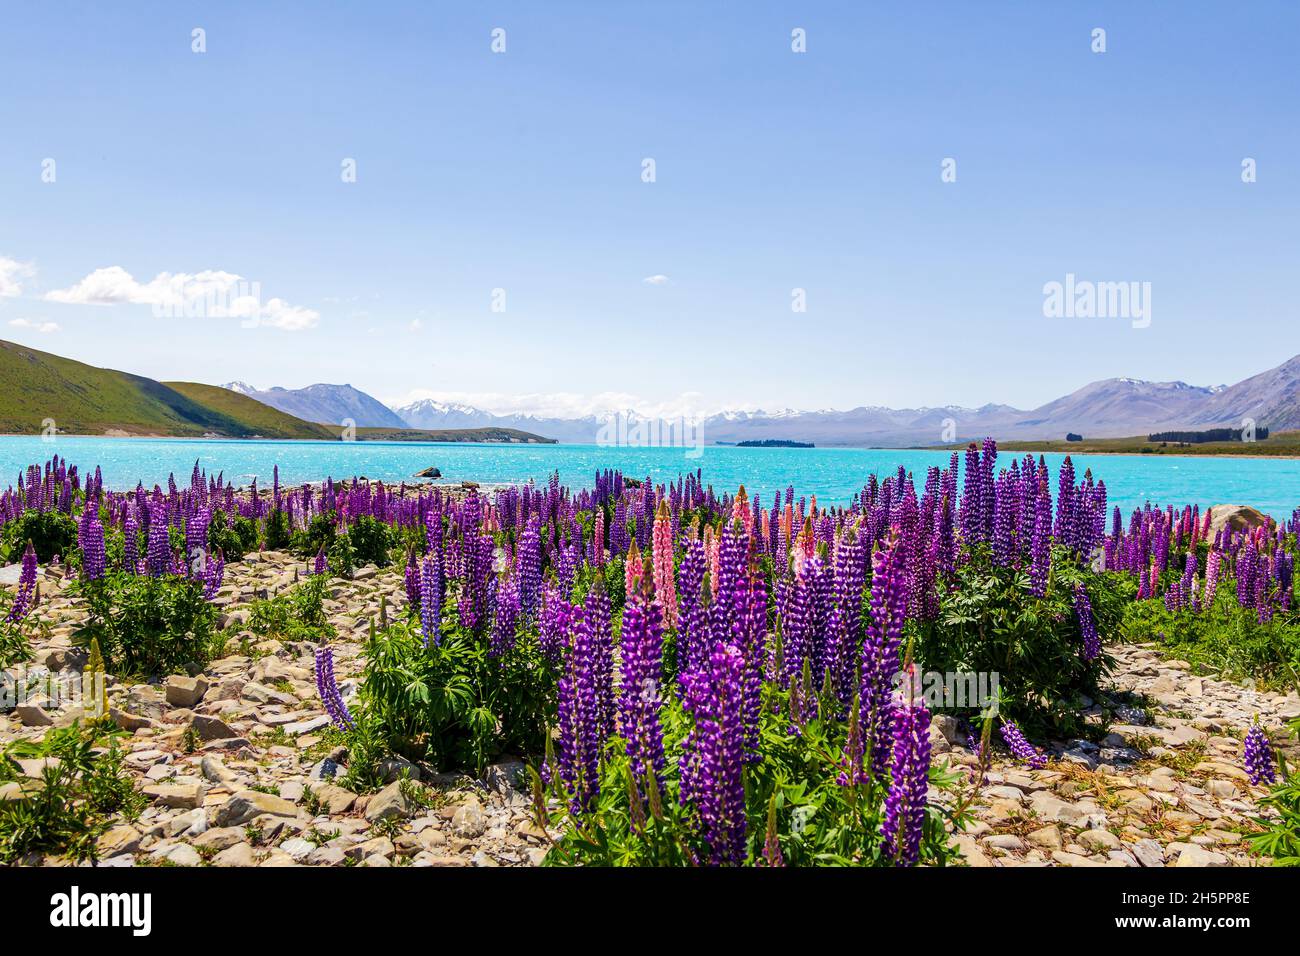 Landschaften am See von Neuseeland. Lupinenfelder am Ufer des Lake Tekapo Stockfoto